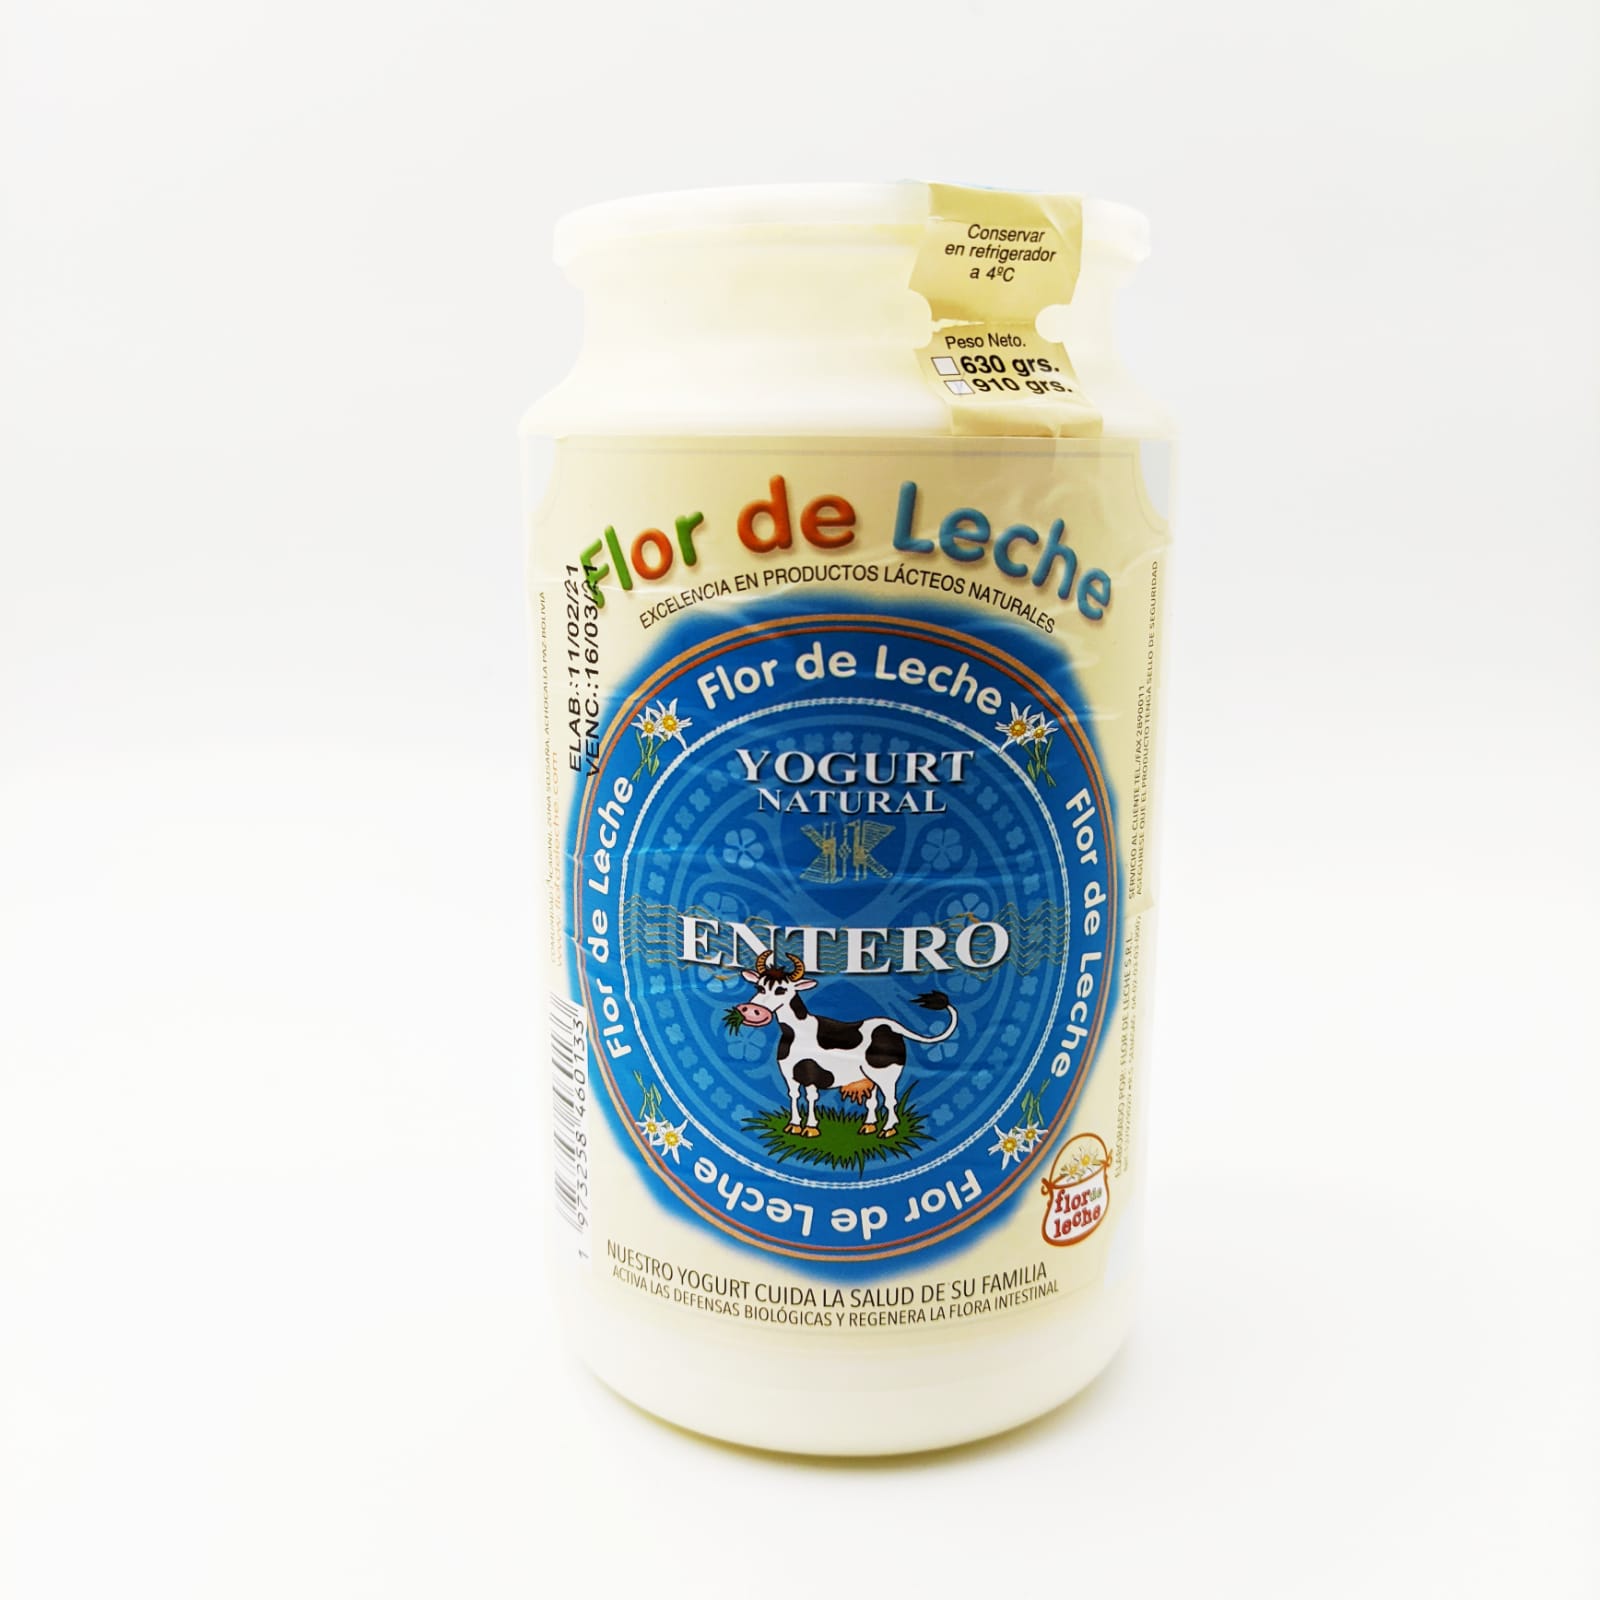 Ecotambo - Yogurt Natural Entero (910 grs.)